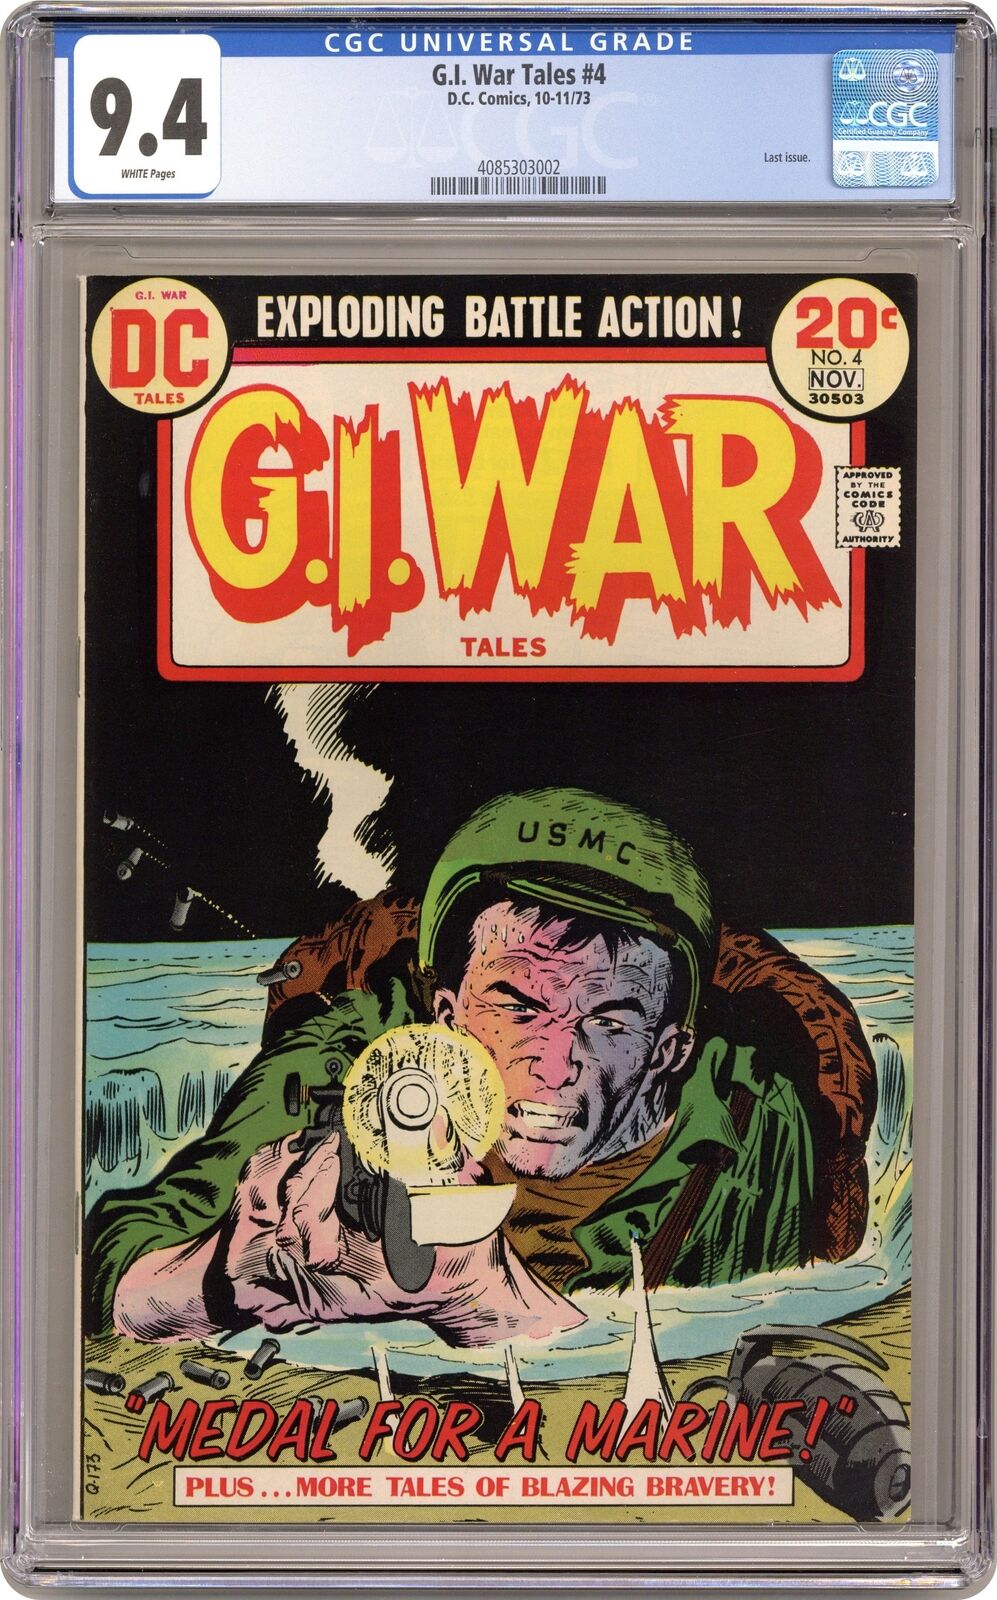 GI War Tales #4 CGC 9.4 1973 4085303002